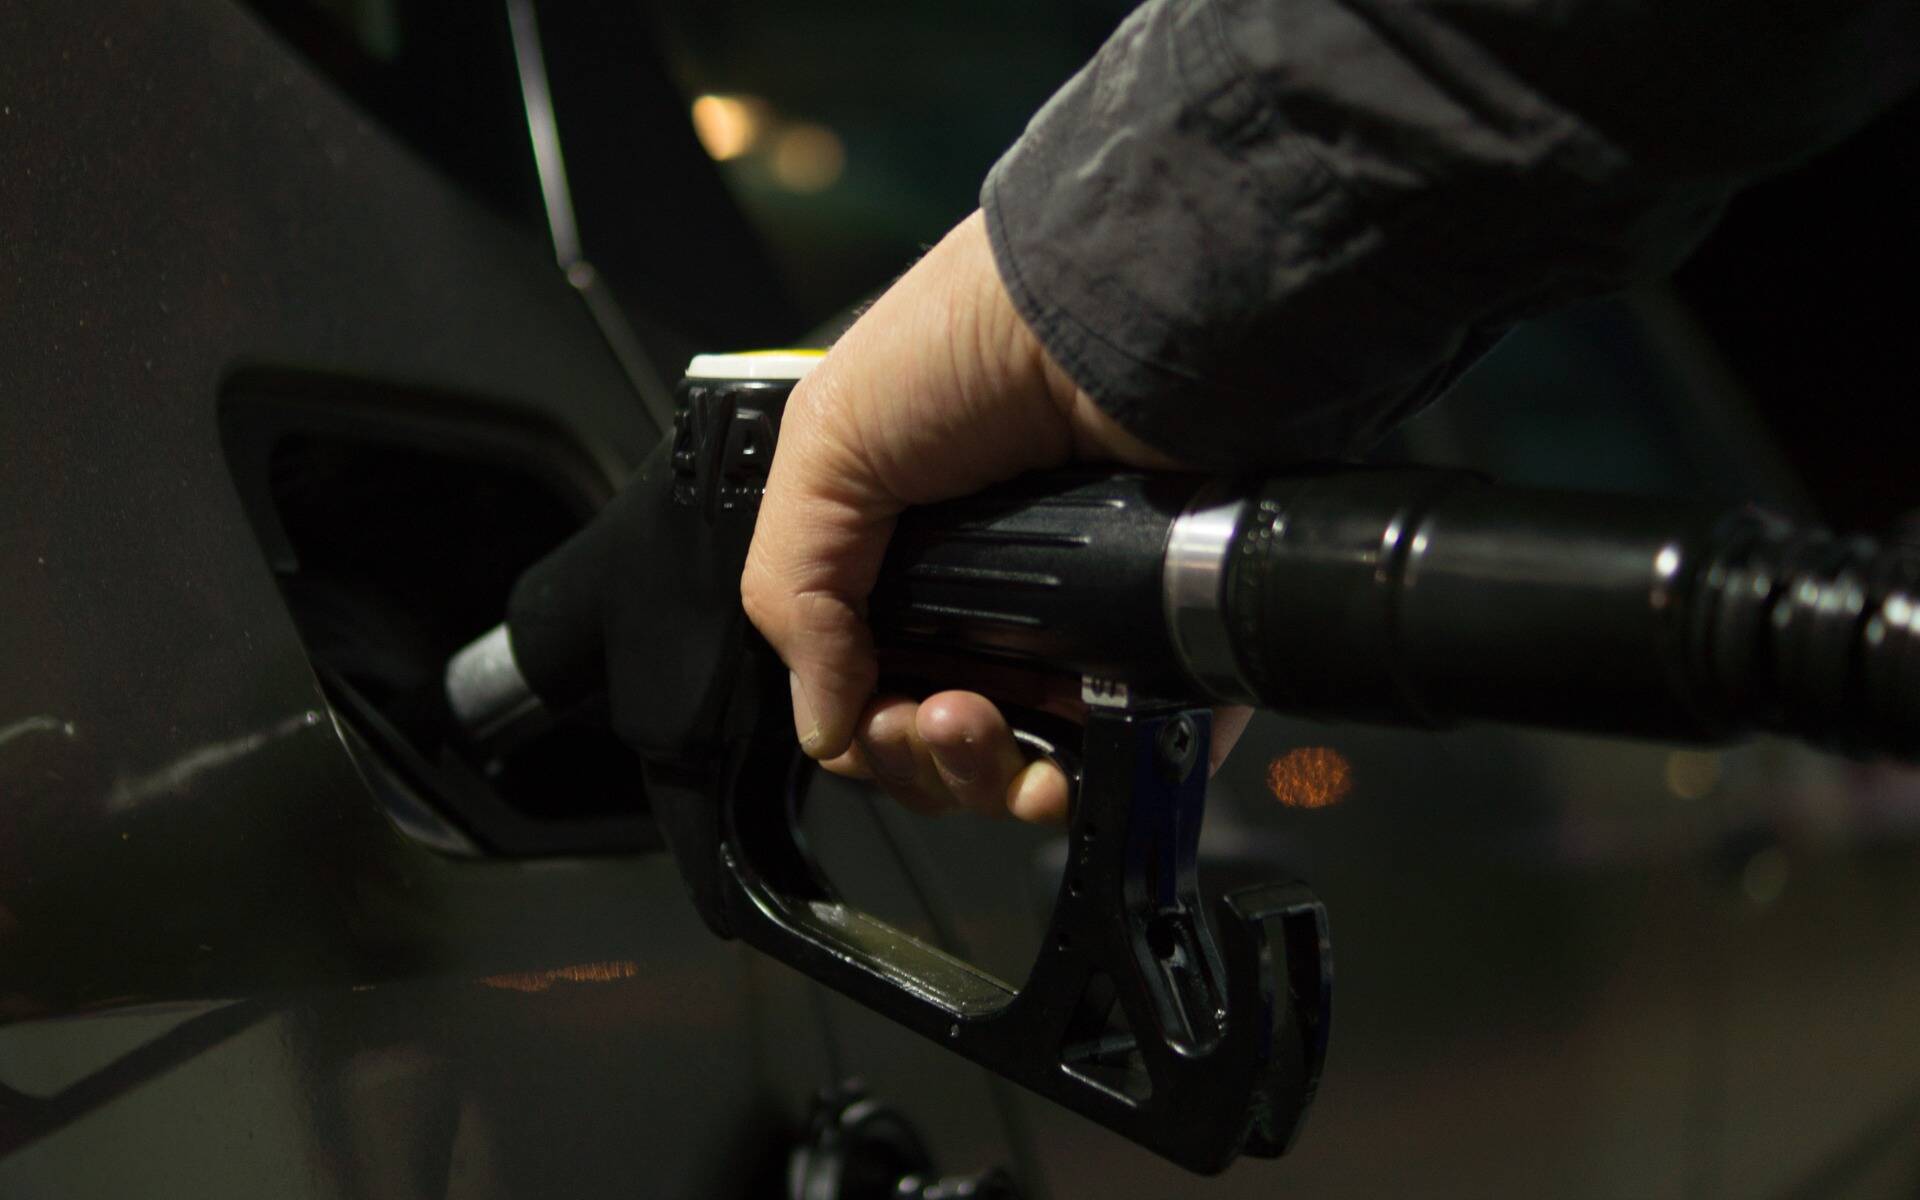 Prix à la pompe trop élevé: CAA-Québec dénonce des stations d’essence qui s’en mettent plein les poches 552696-prix-a-la-pompe-trop-eleve-caa-quebec-denonce-des-stations-d-essence-qui-s-en-mettent-plein-les-poches